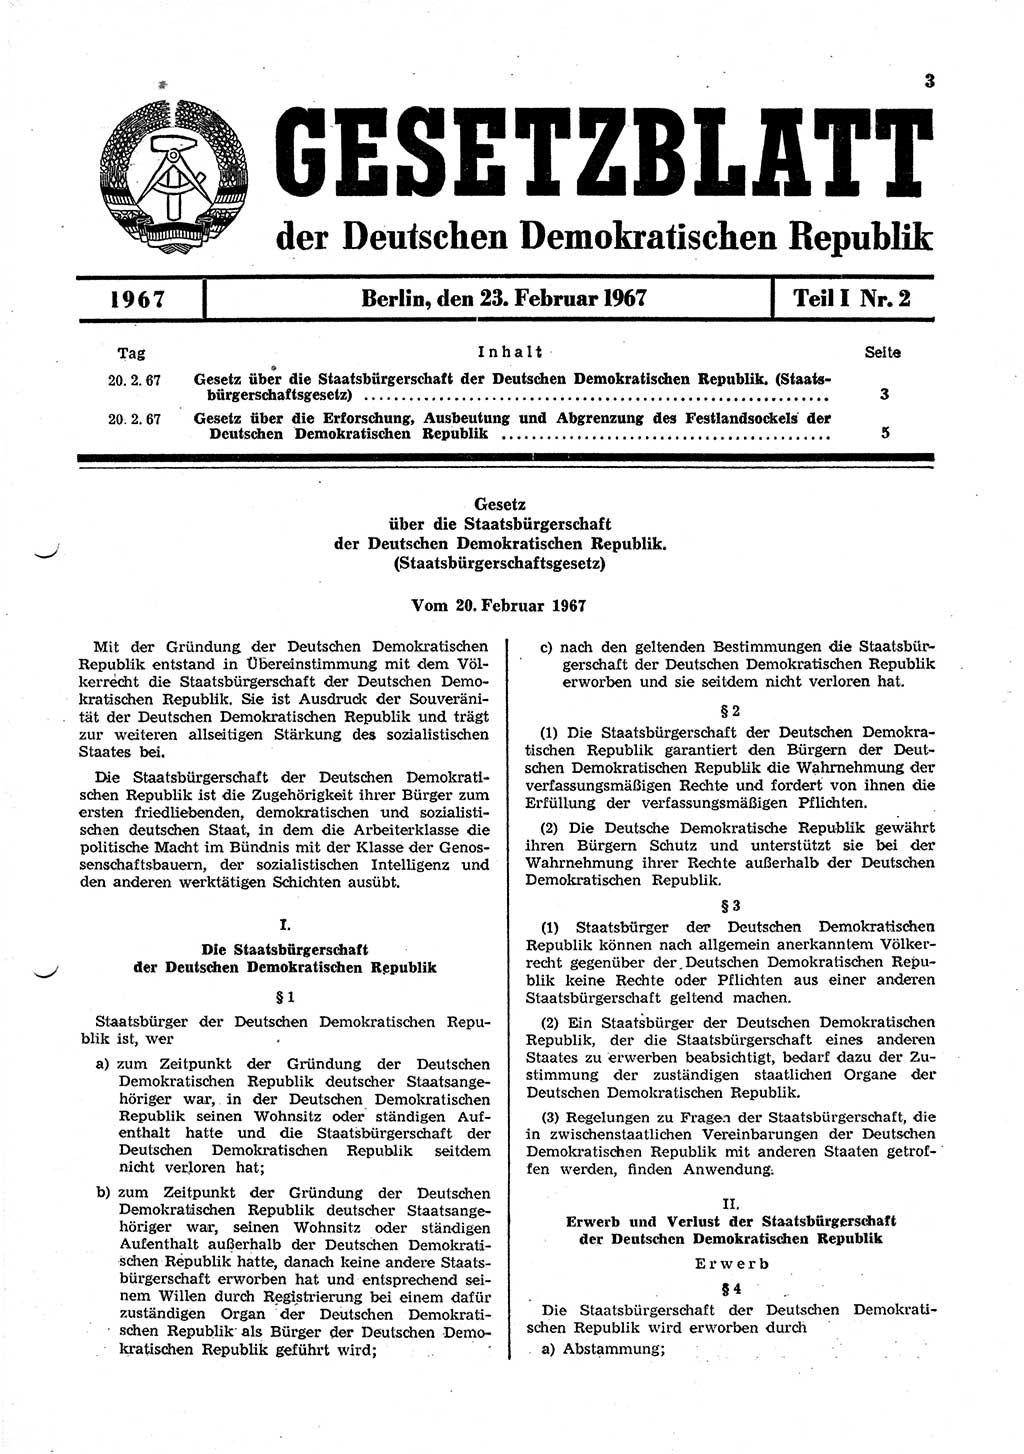 Gesetzblatt (GBl.) der Deutschen Demokratischen Republik (DDR) Teil Ⅰ 1967, Seite 3 (GBl. DDR Ⅰ 1967, S. 3)